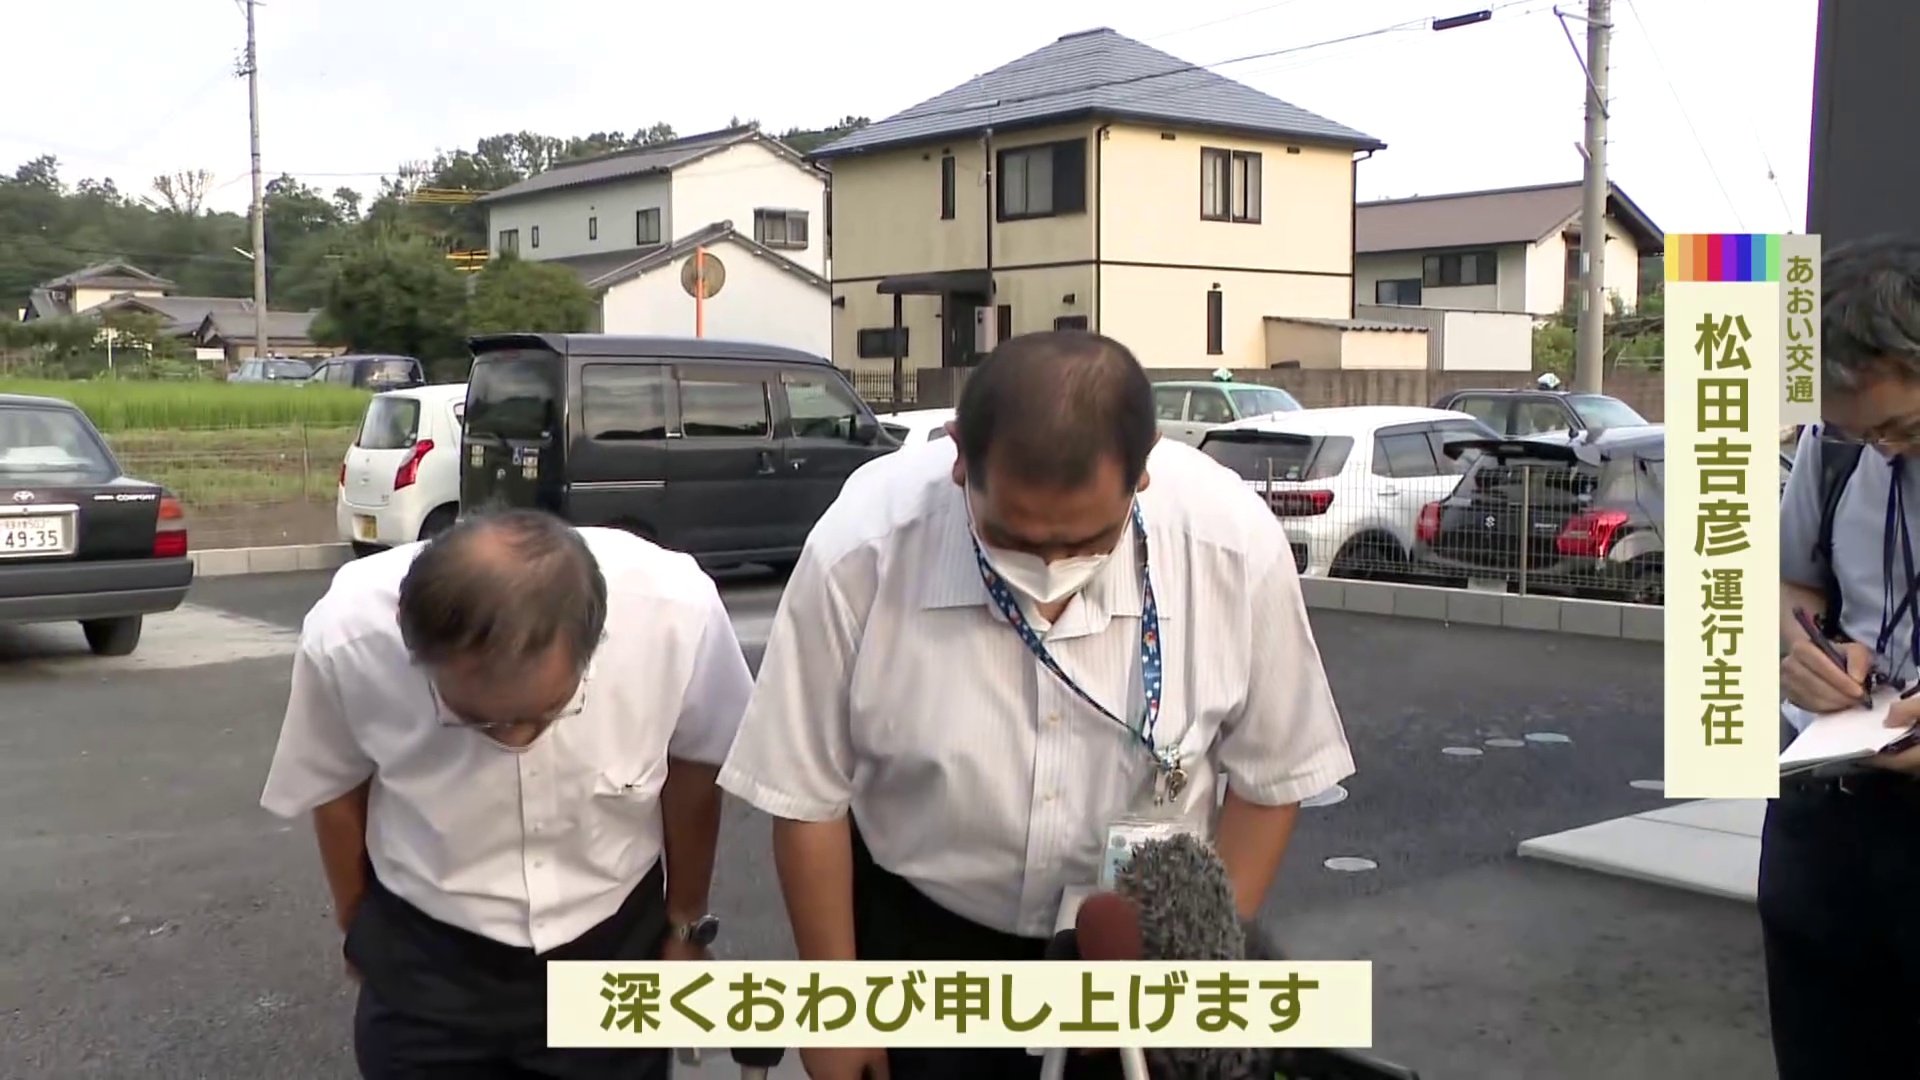 名古屋 高速バス事故 バス運行会社が会見で謝罪